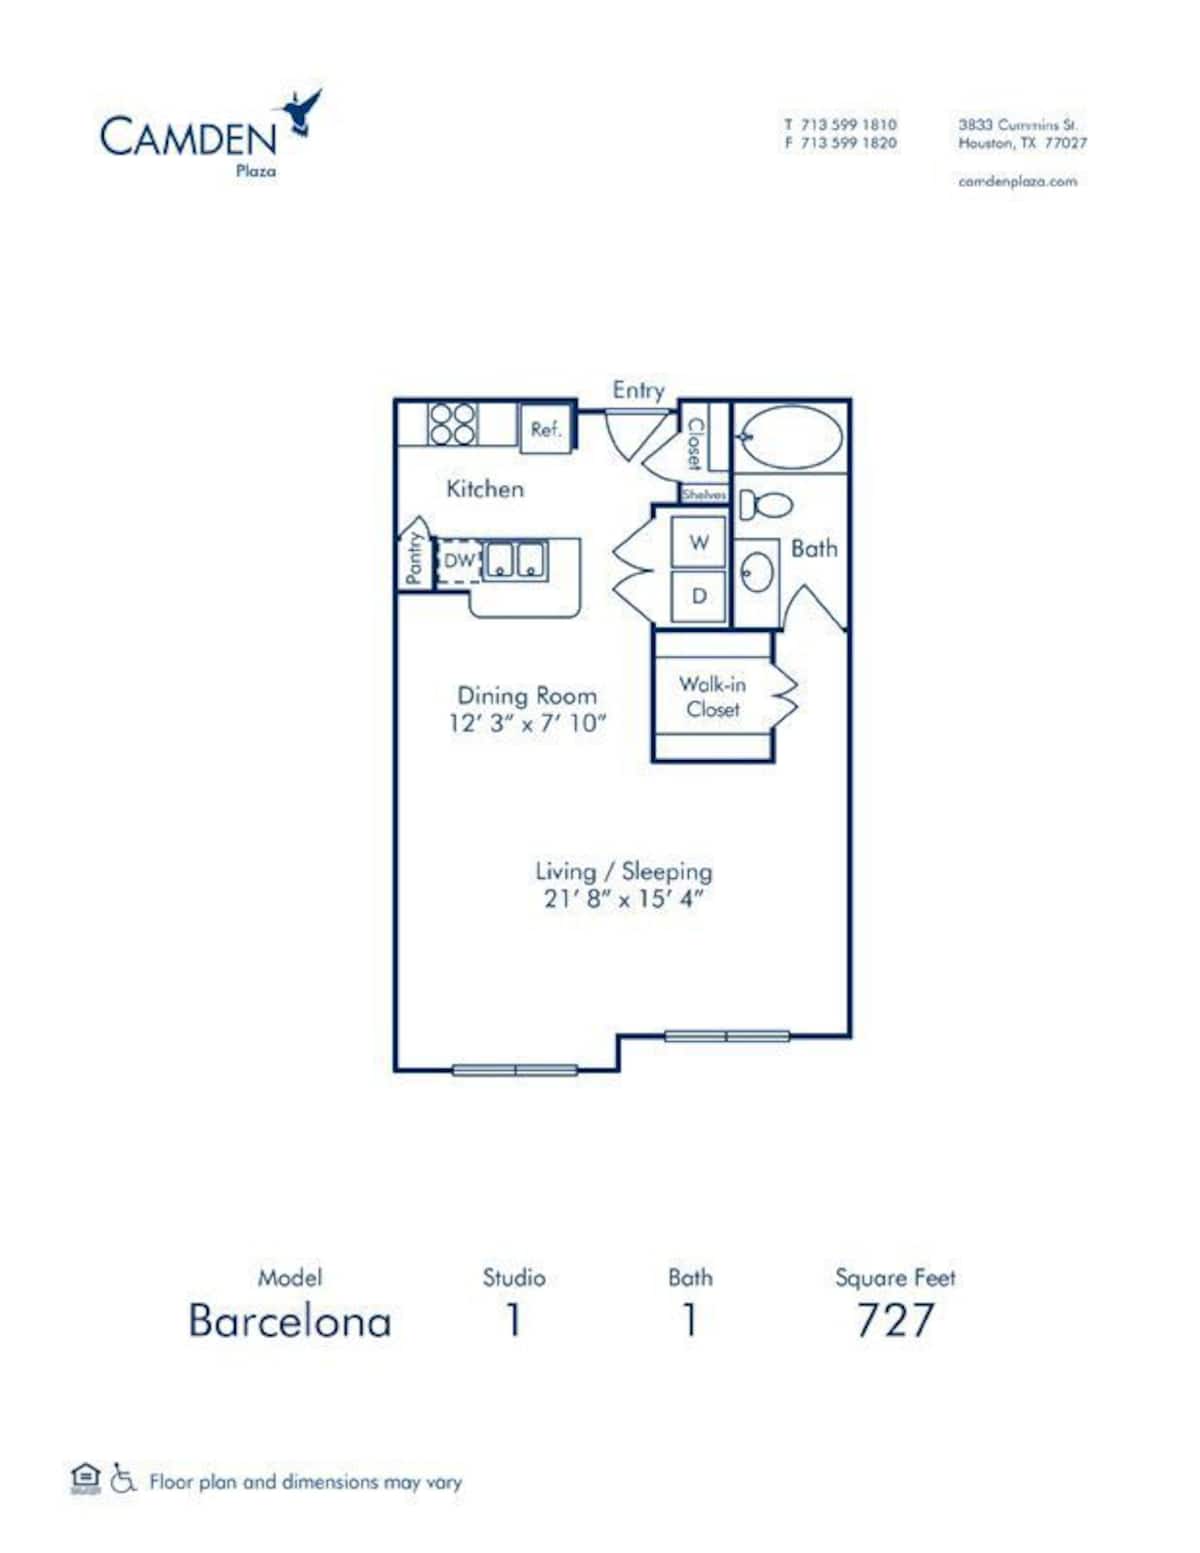 Floorplan diagram for Barcelona, showing Studio